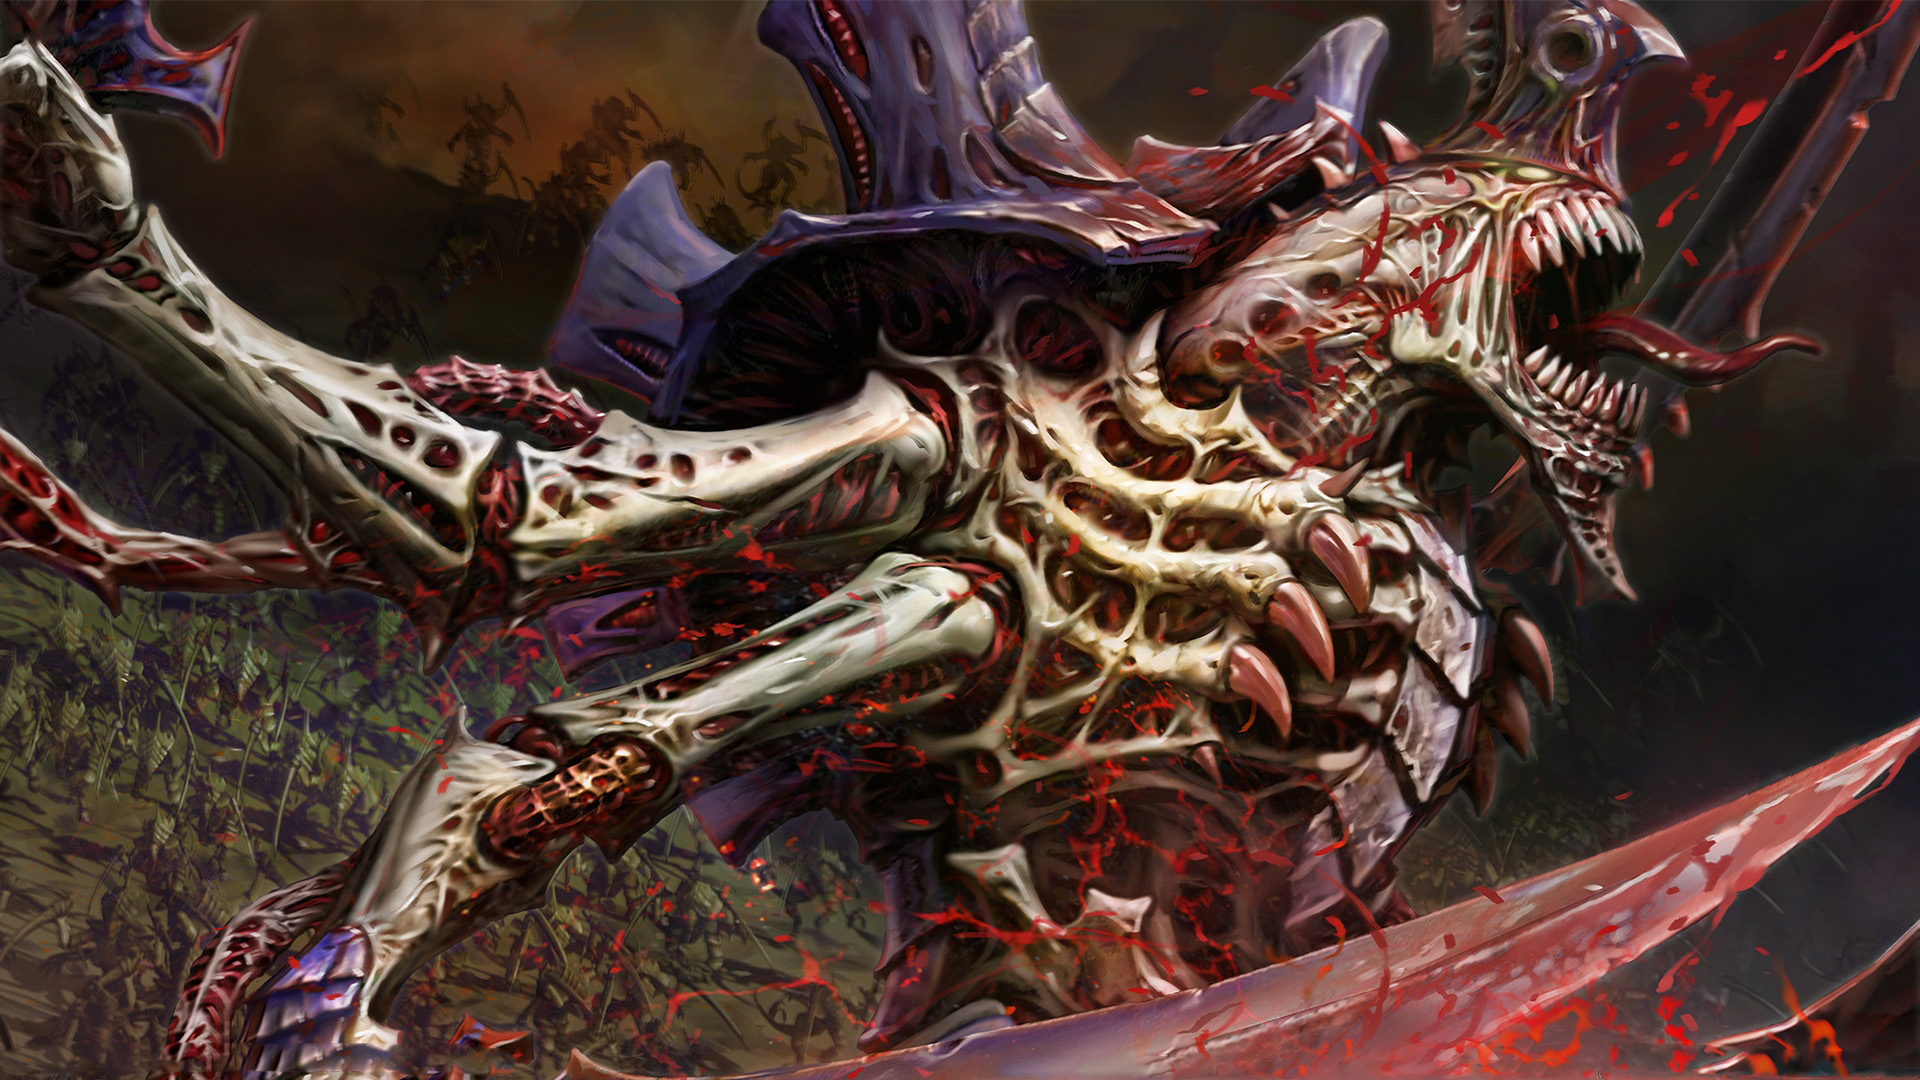 Warhammer 40k Tyranids Hive Tyrant Dark Horror Fantasy Monster Evil